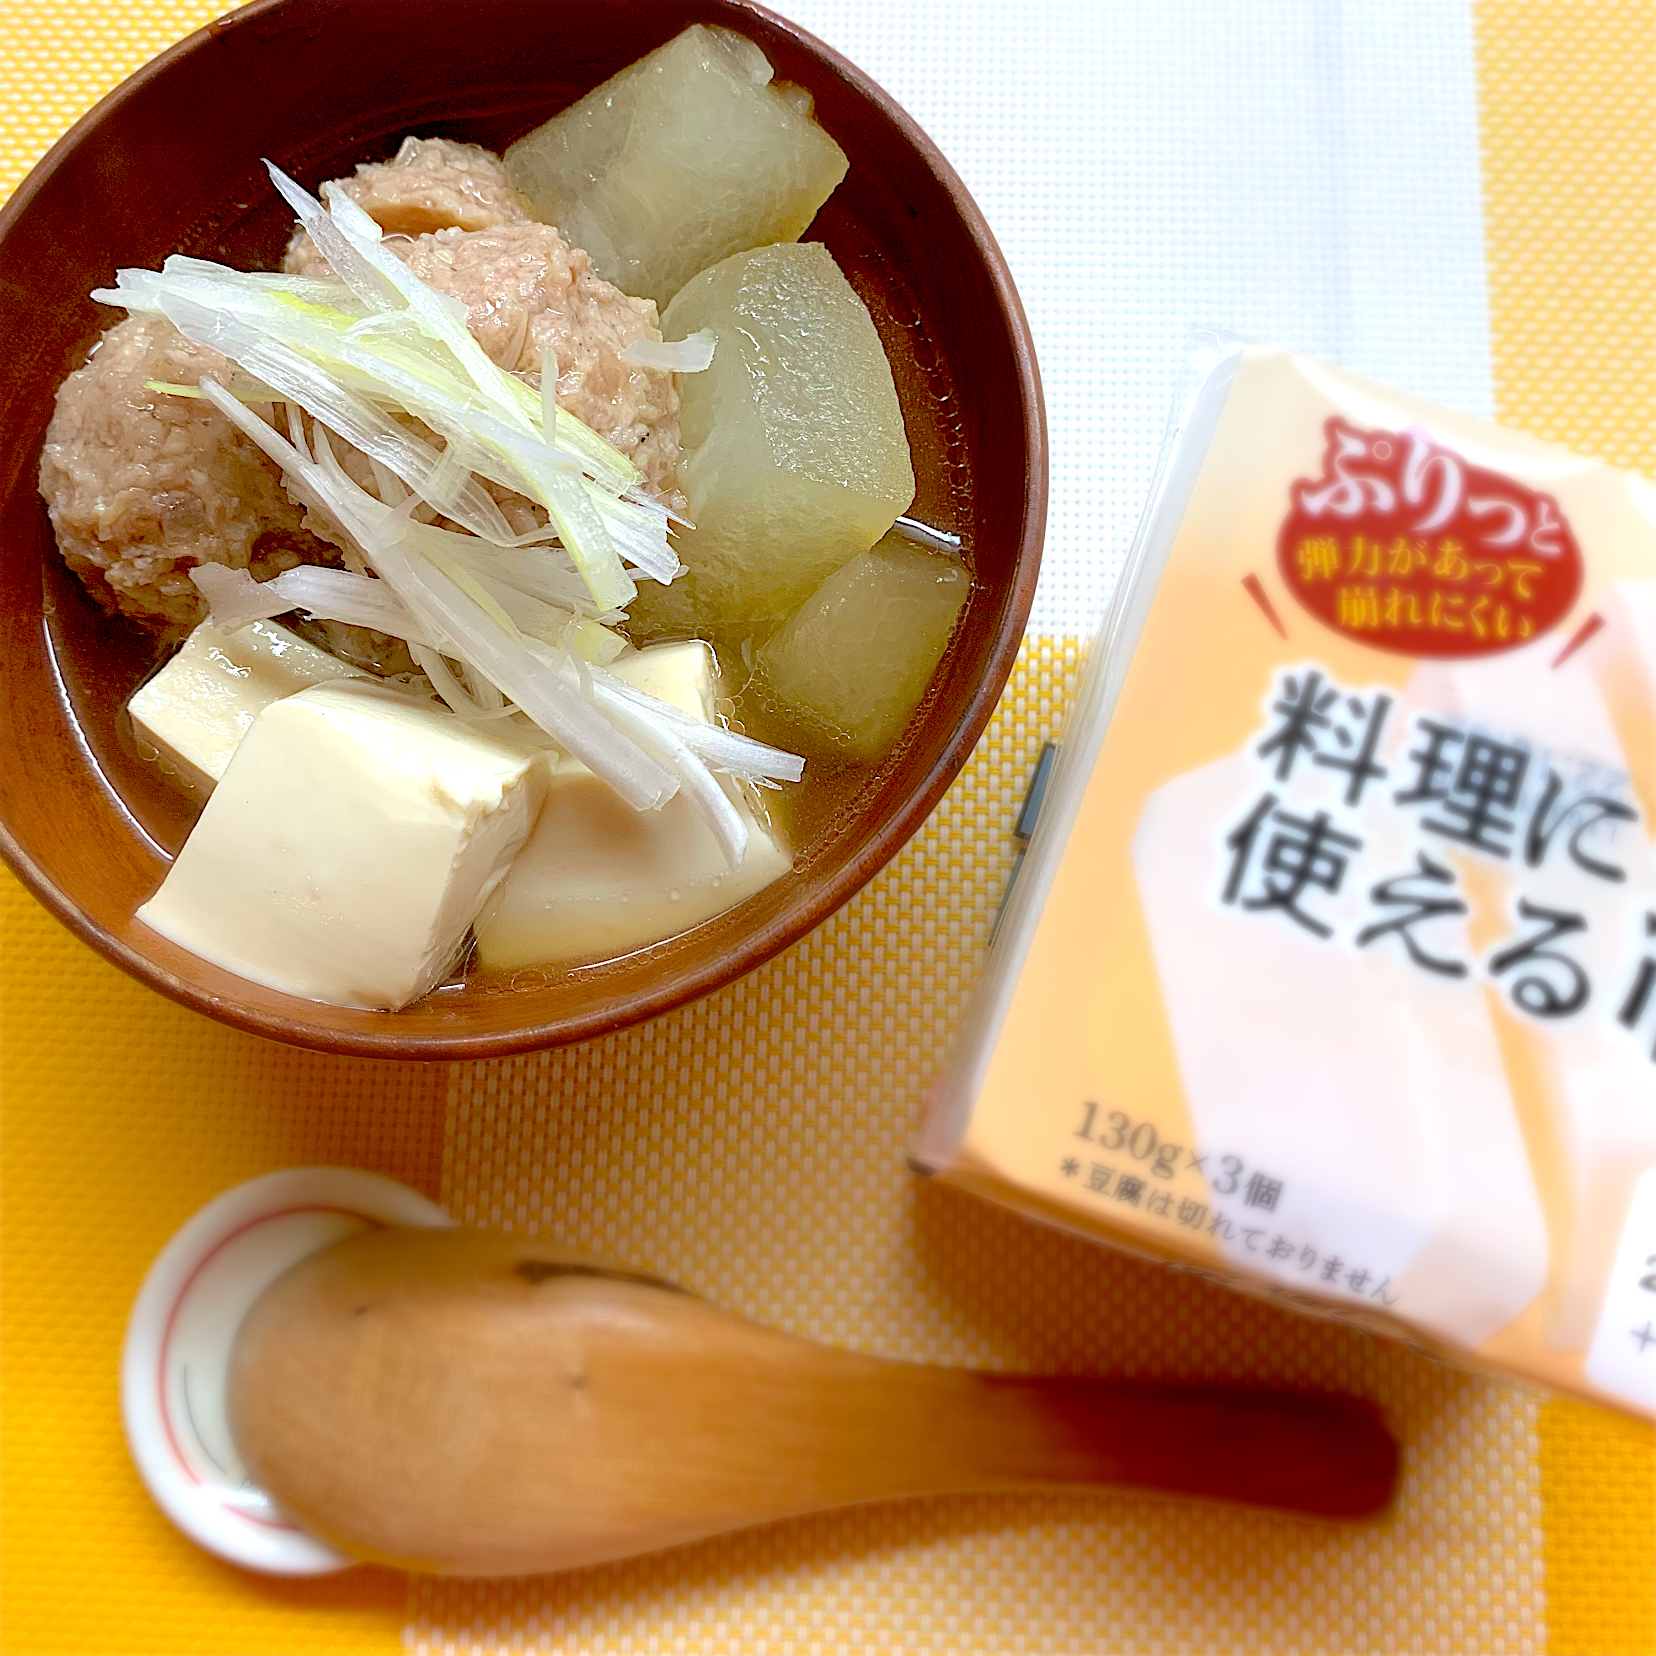 ヤマサ醤油公式アカウントさんの料理 冬瓜と鶏団子のうま煮に豆腐イン